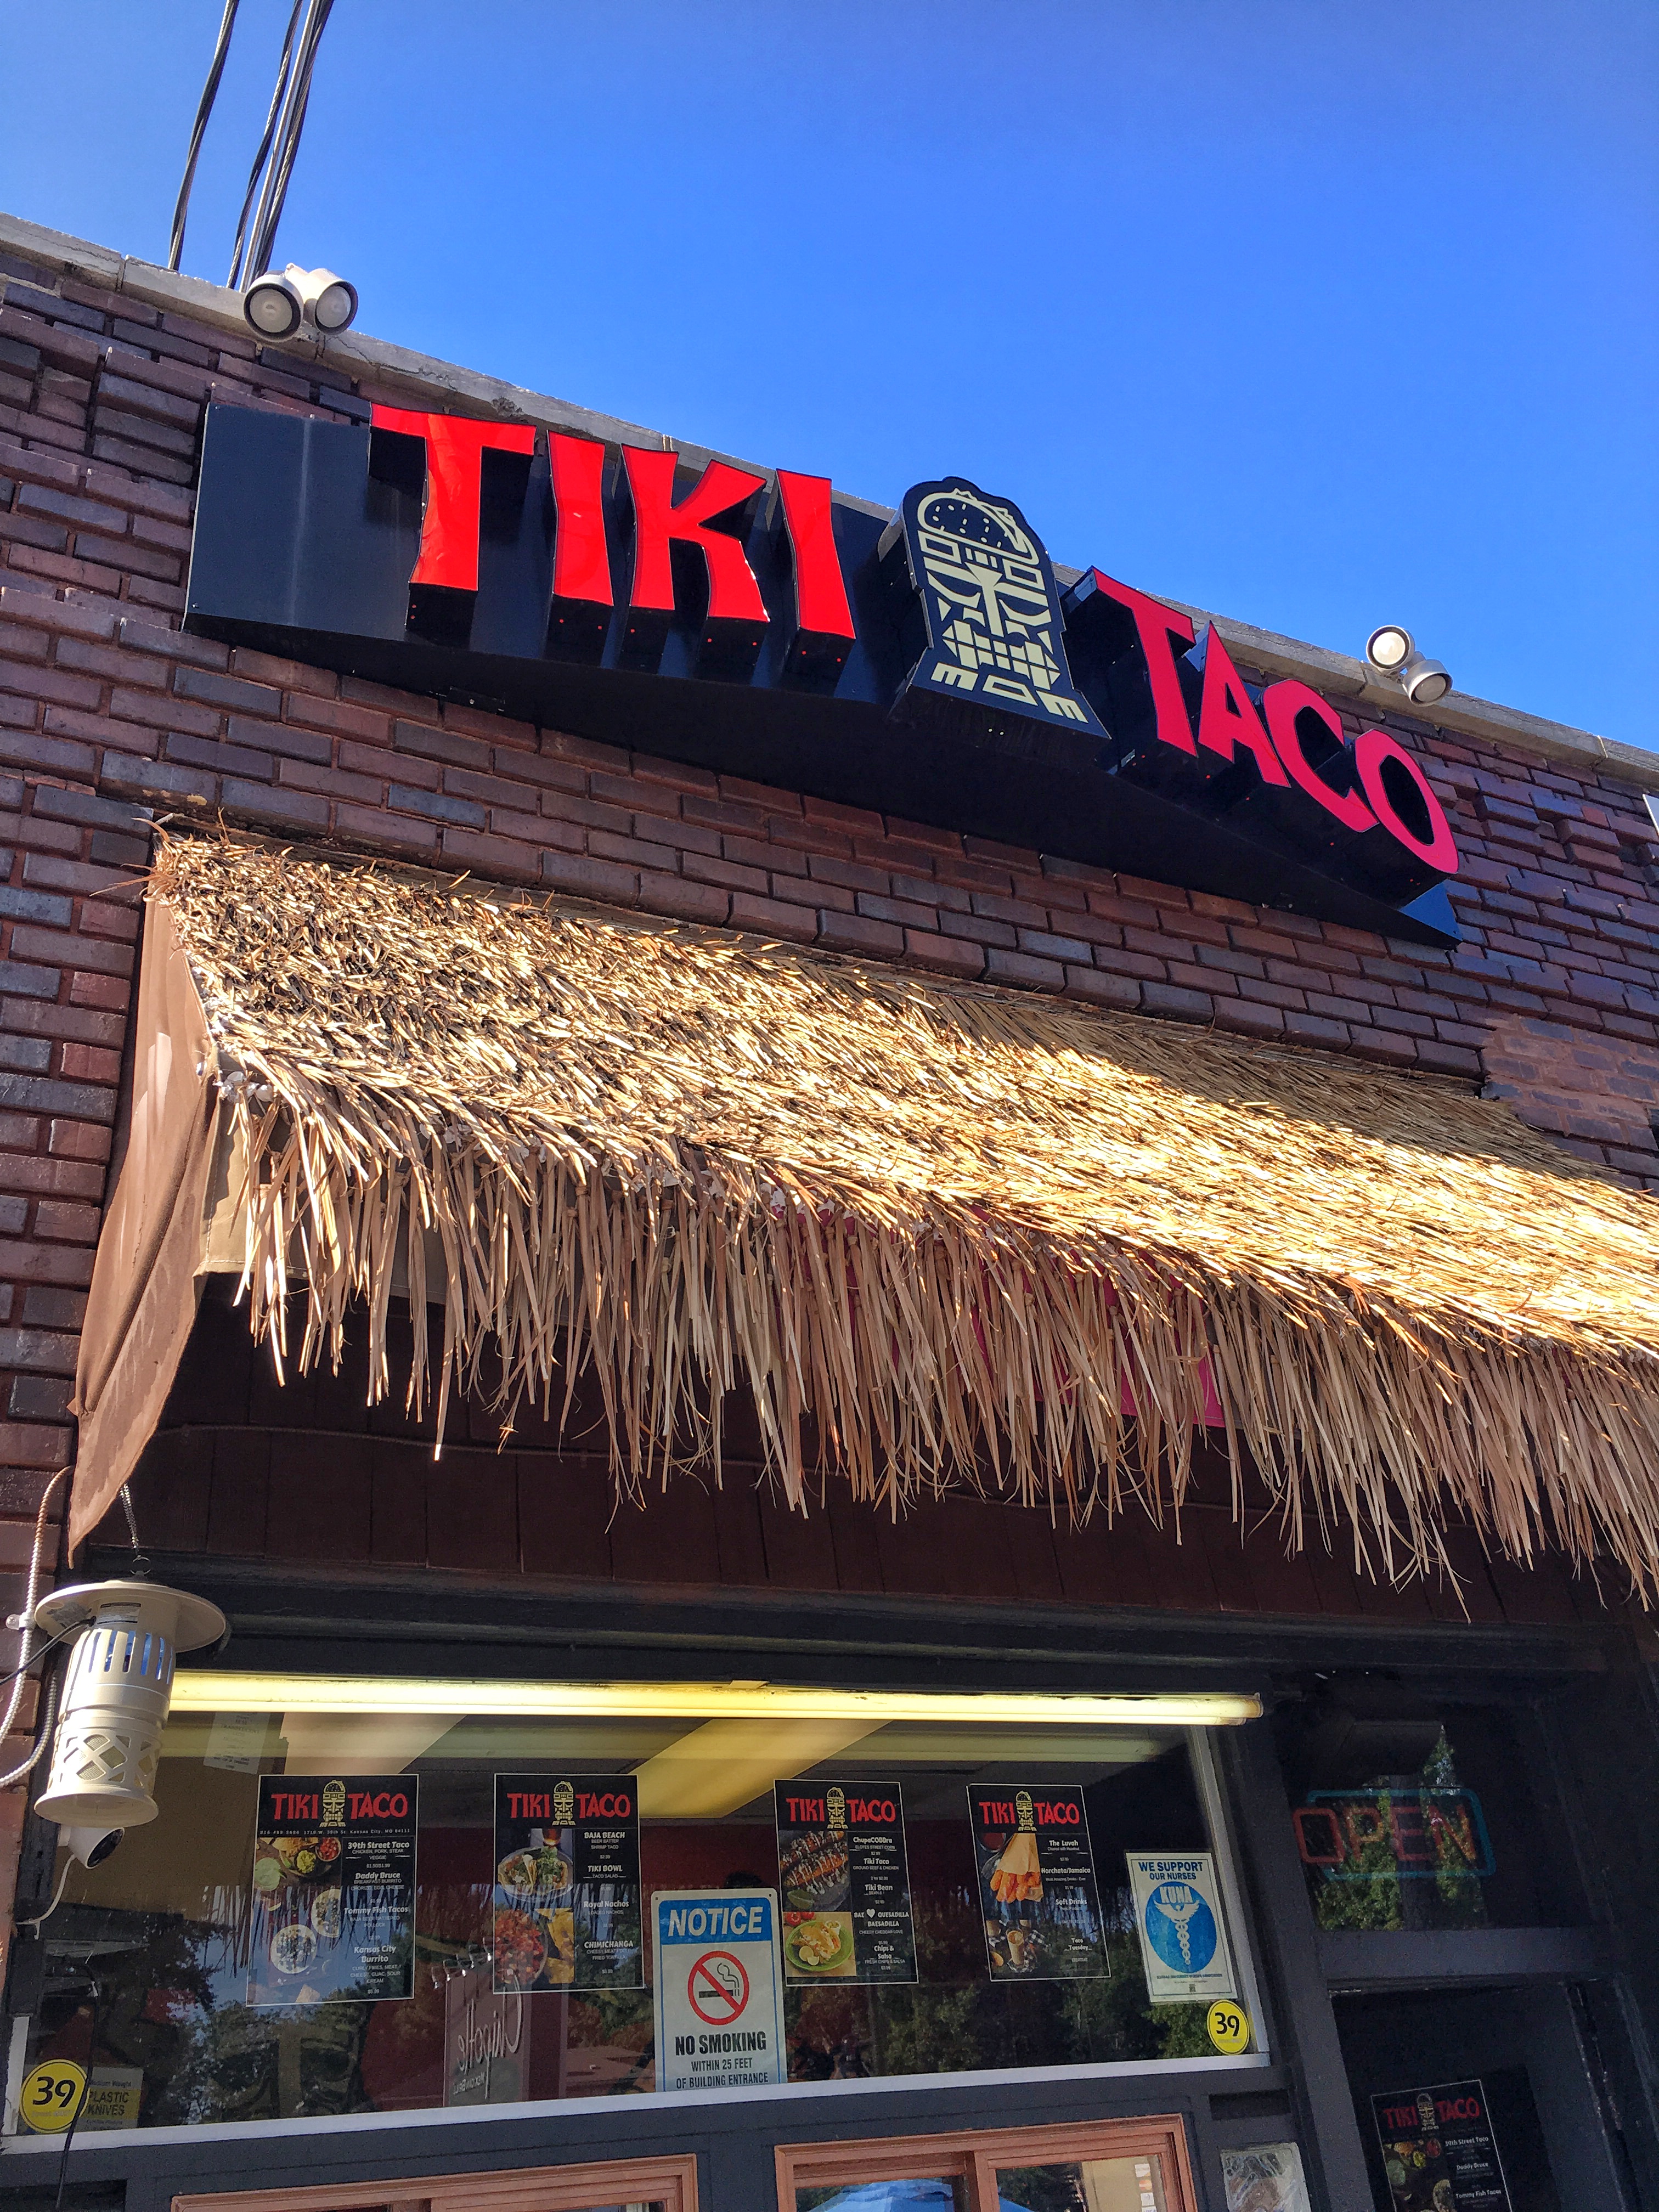 Taco Tuesday at TikiTaco